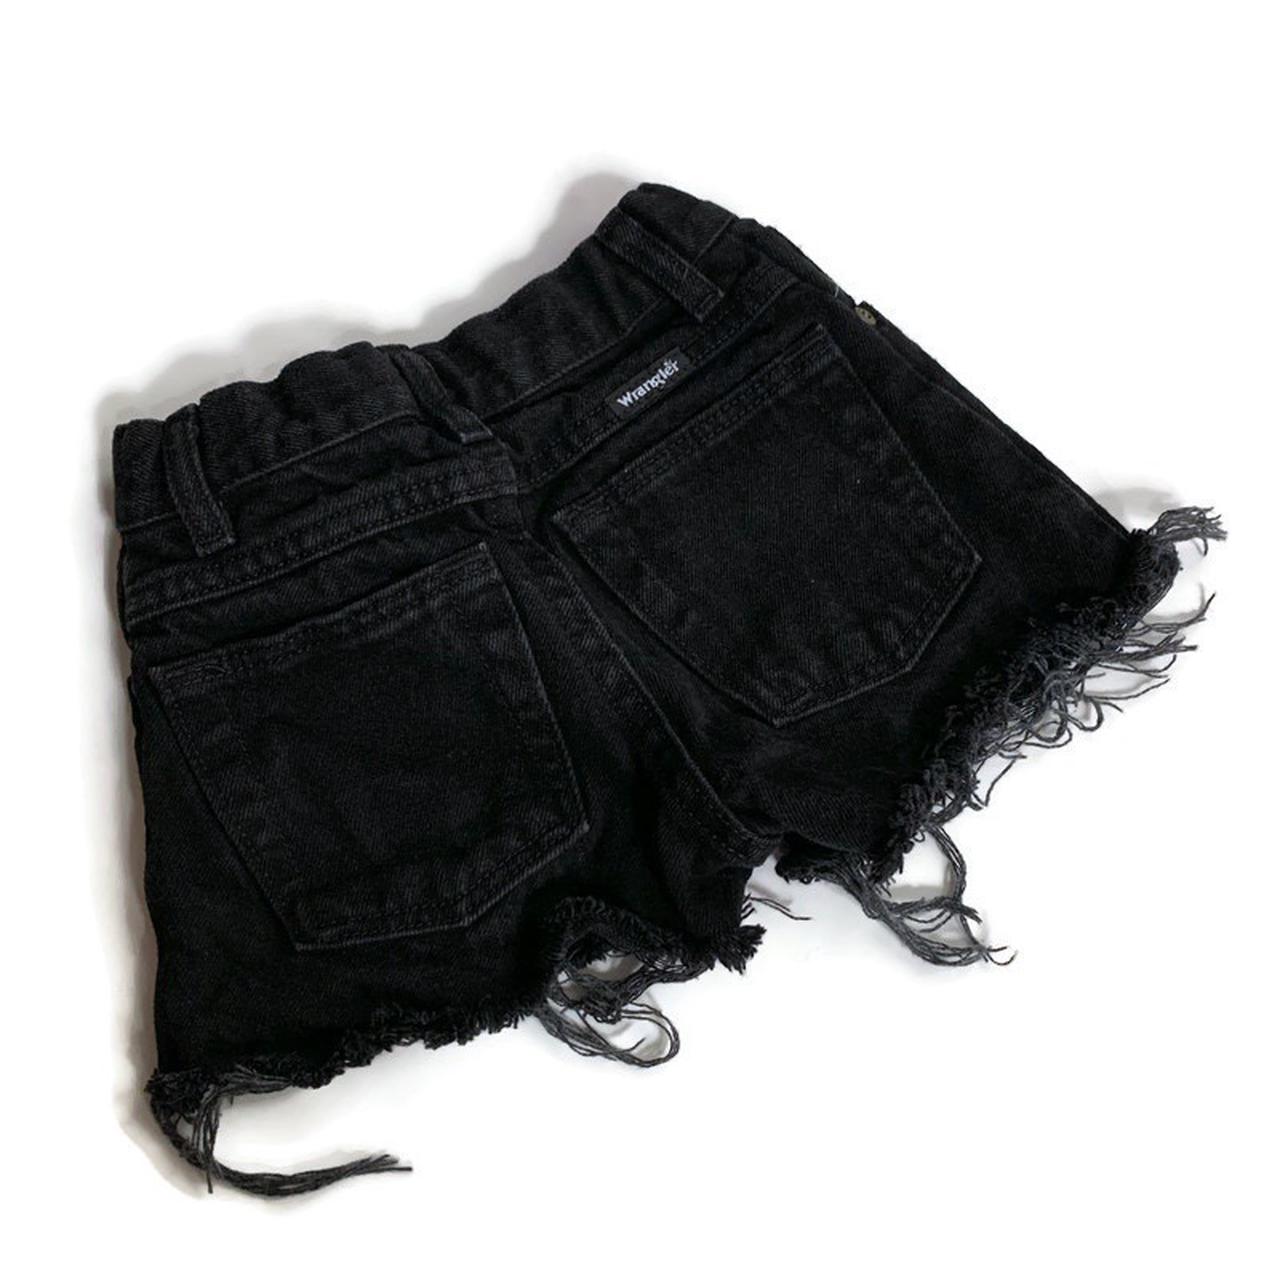 Wrangler Women's Black Shorts